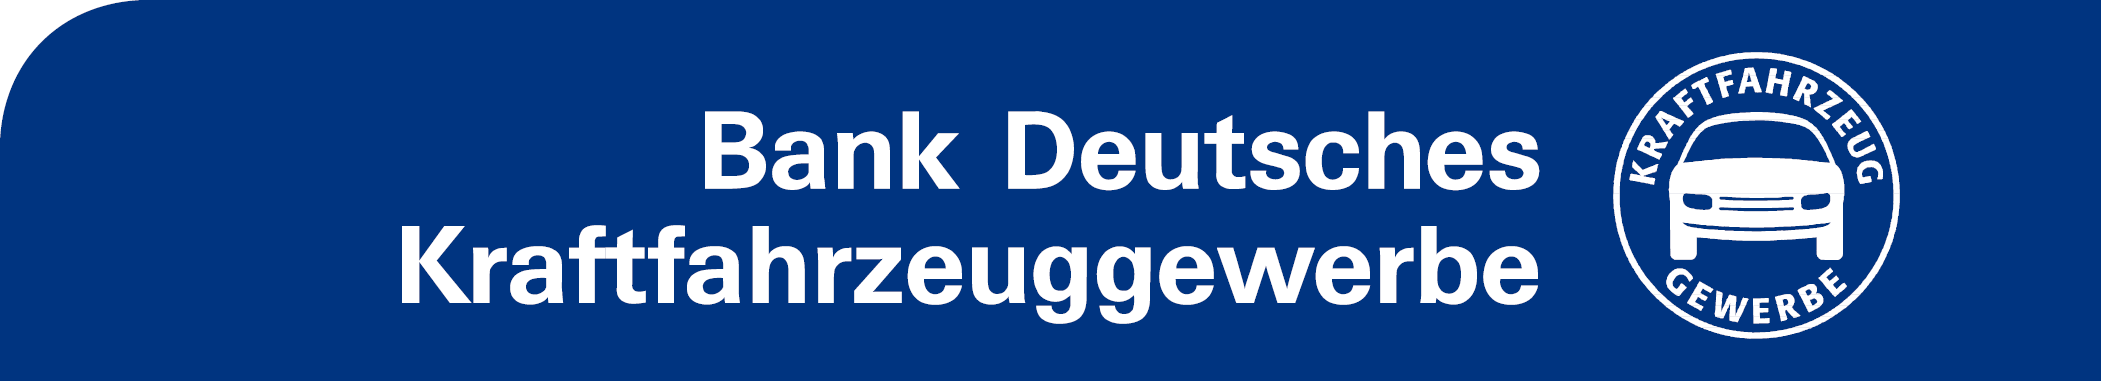 Bank Deutsches Kraftfahrzeuggewerbe GmbH (BDK)